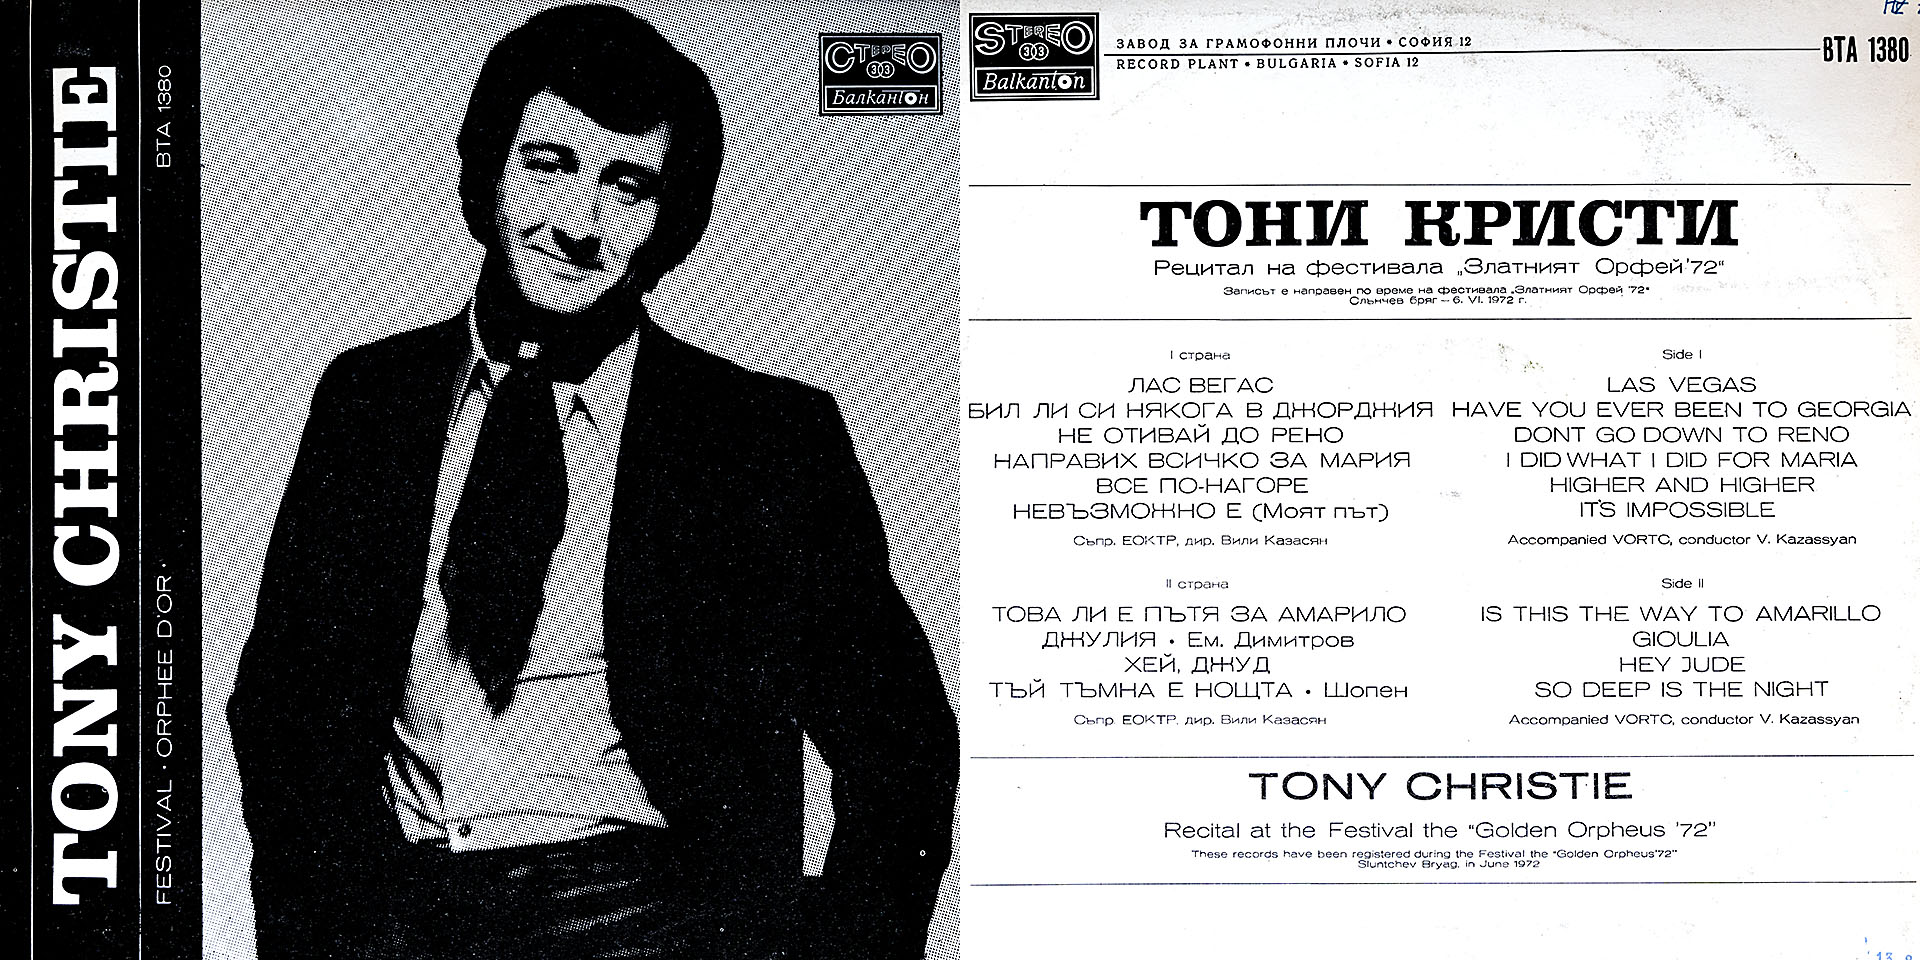 Tony Christie - Tony Christie